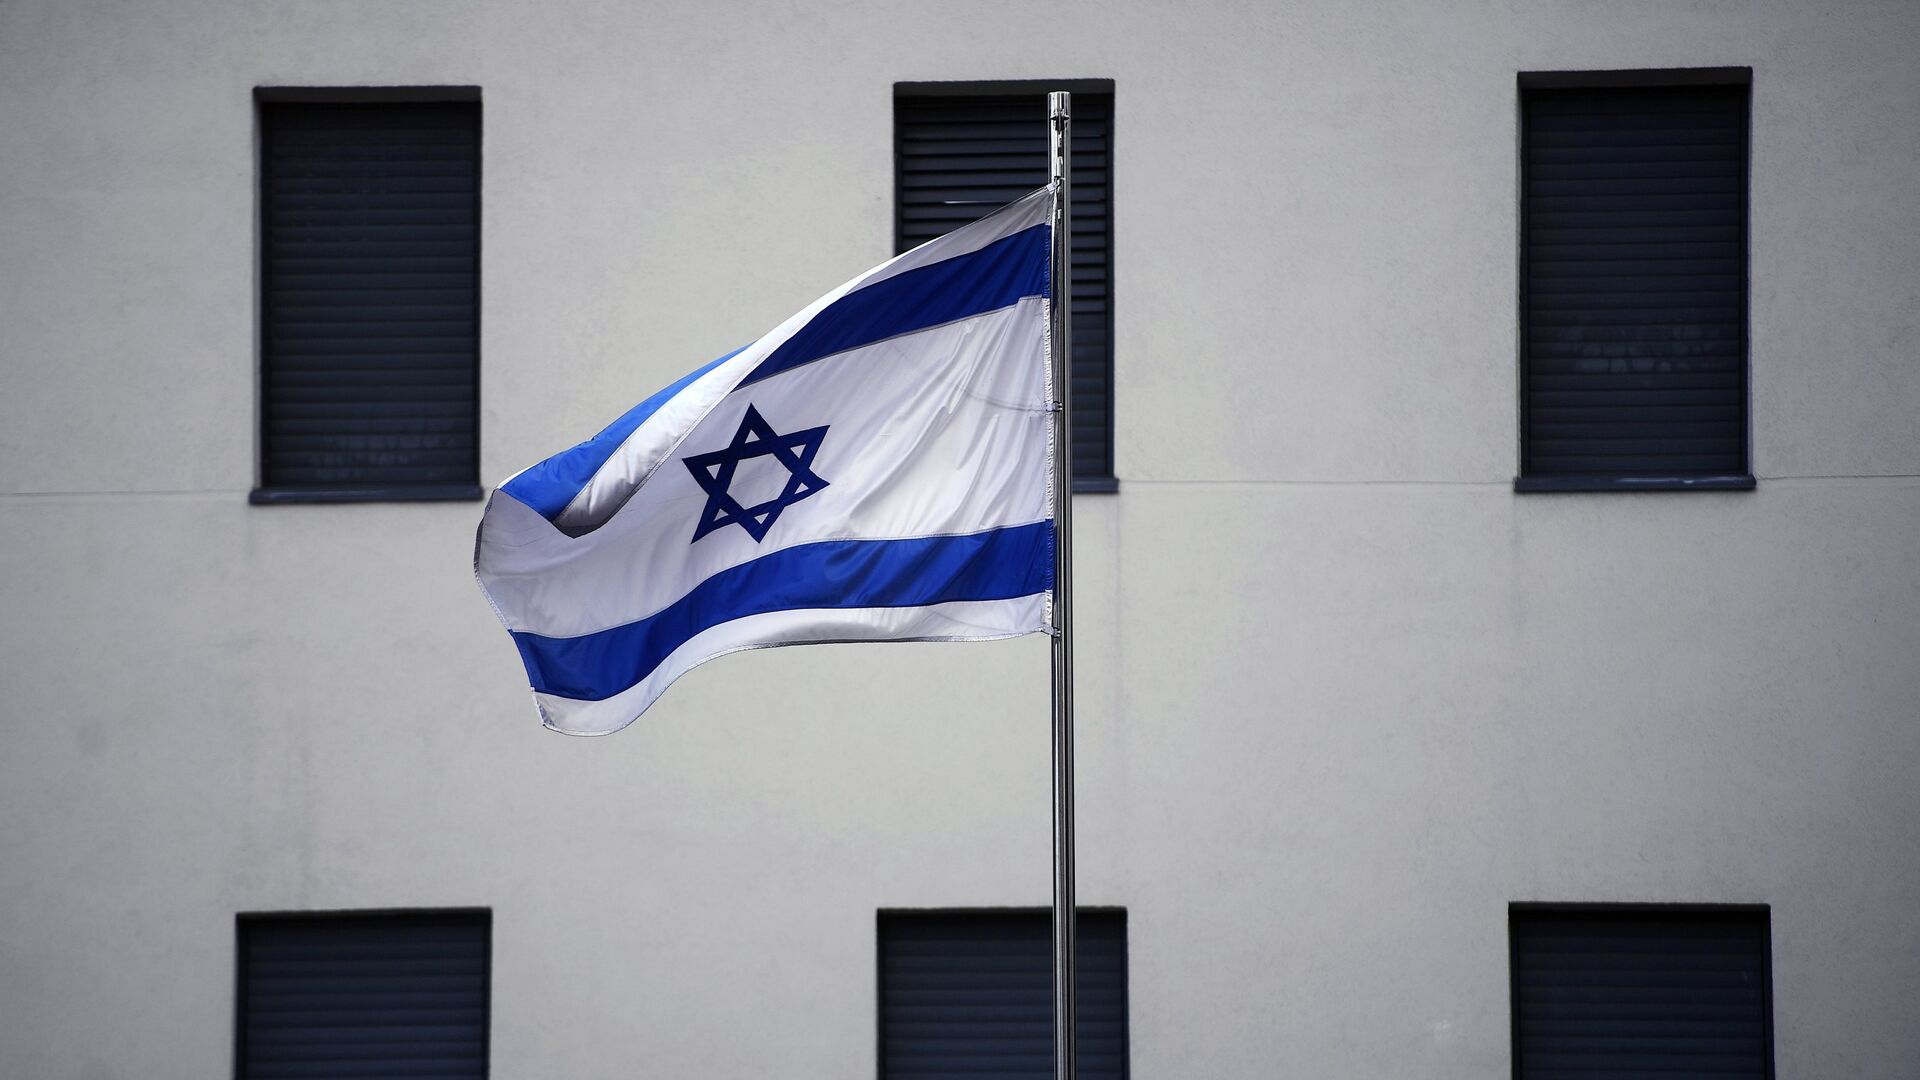 Bandera de Israel en el edificio de la Embajada israelí en Moscú (archivo) - Sputnik Mundo, 1920, 27.11.2021